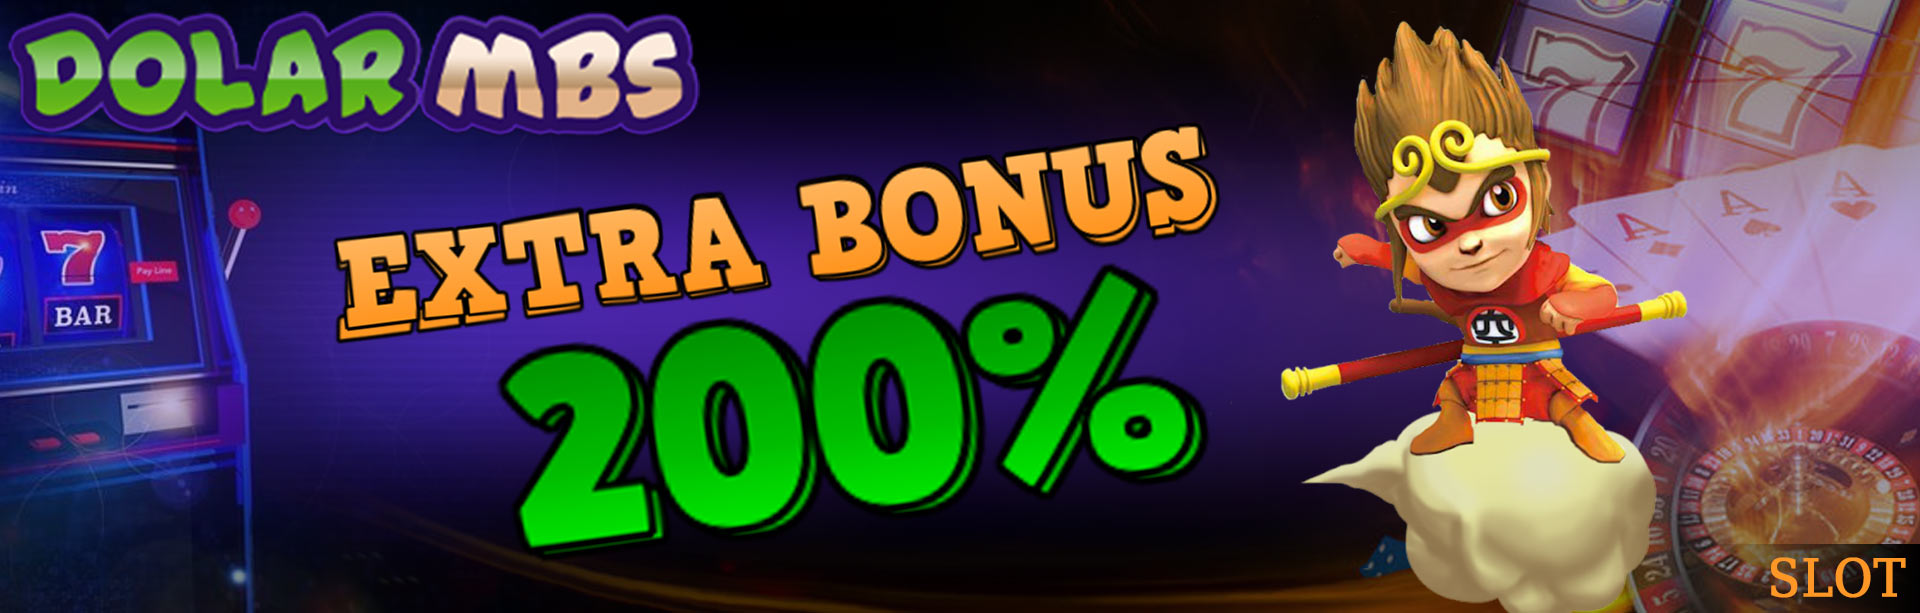 Extra Bonus 200%